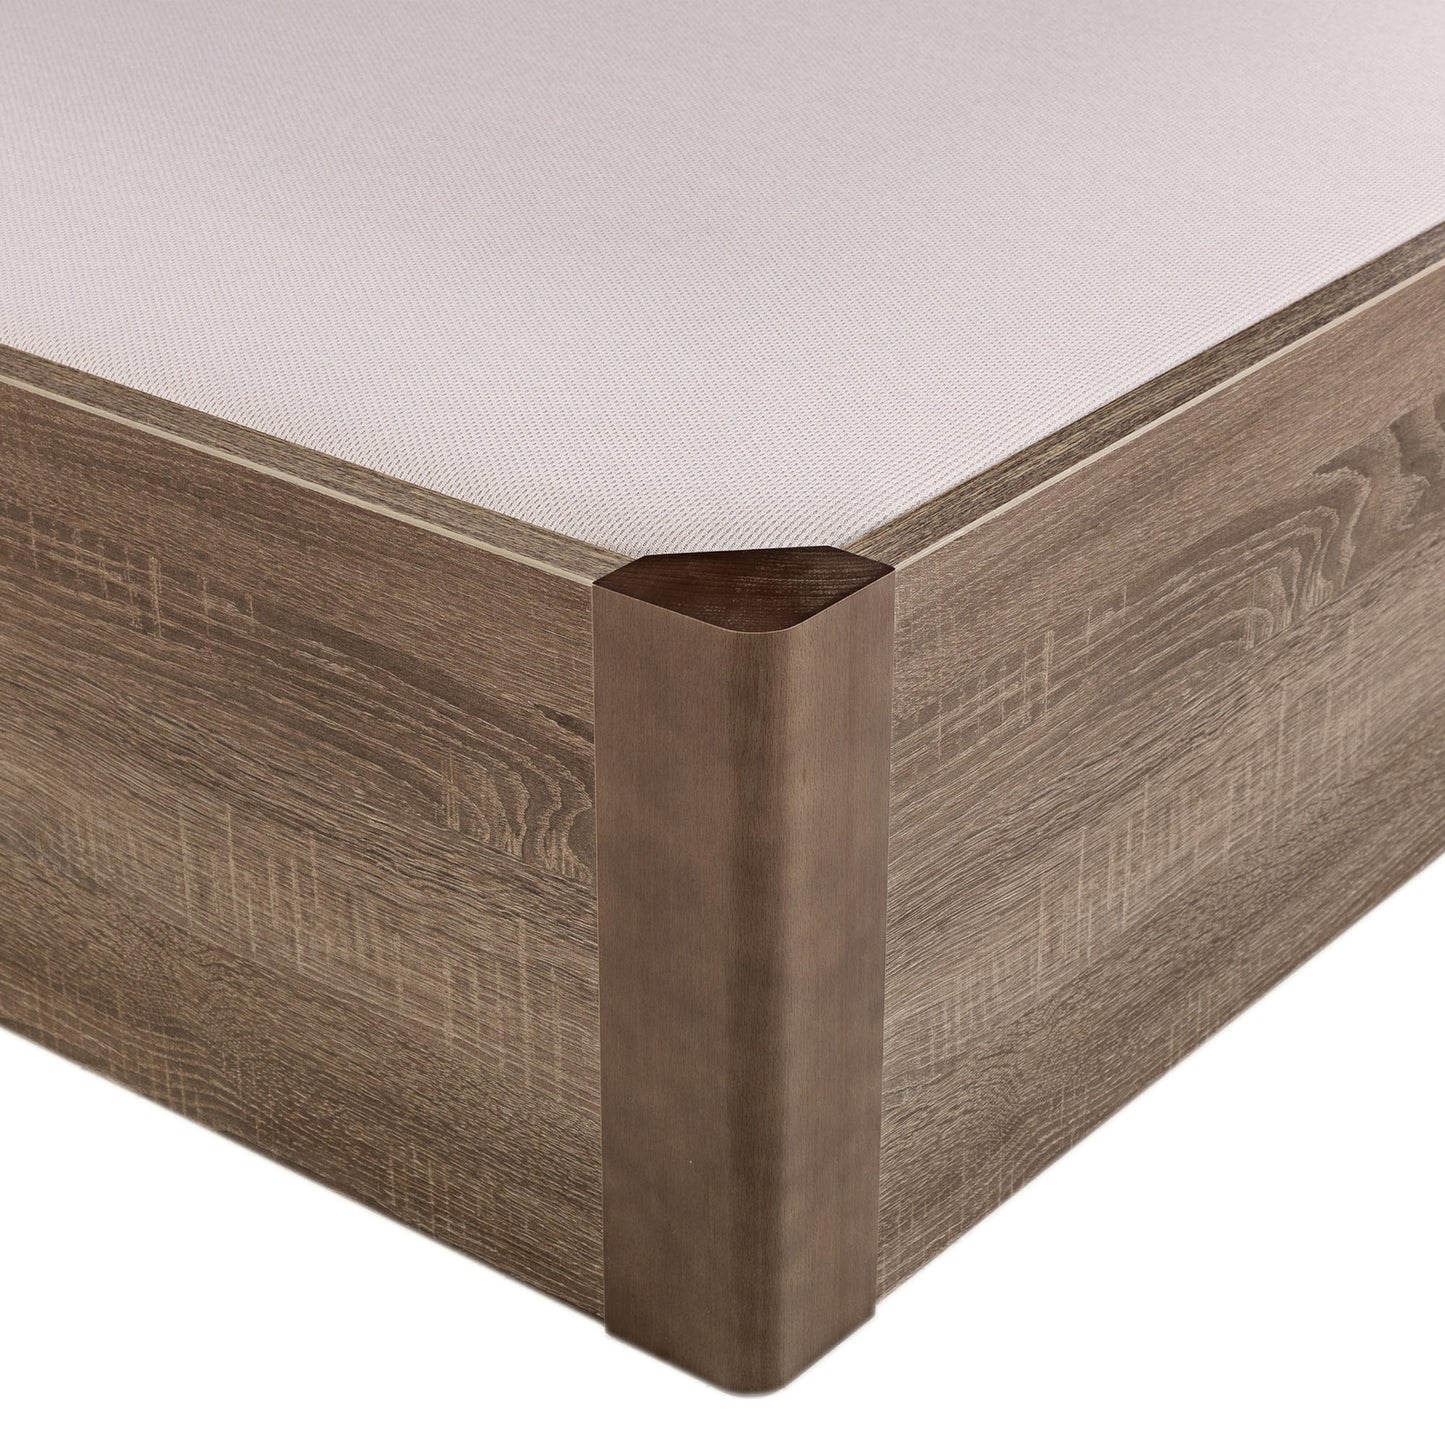 Canapé abatible de madera tapa única de color roble - DESIGN - 105x190